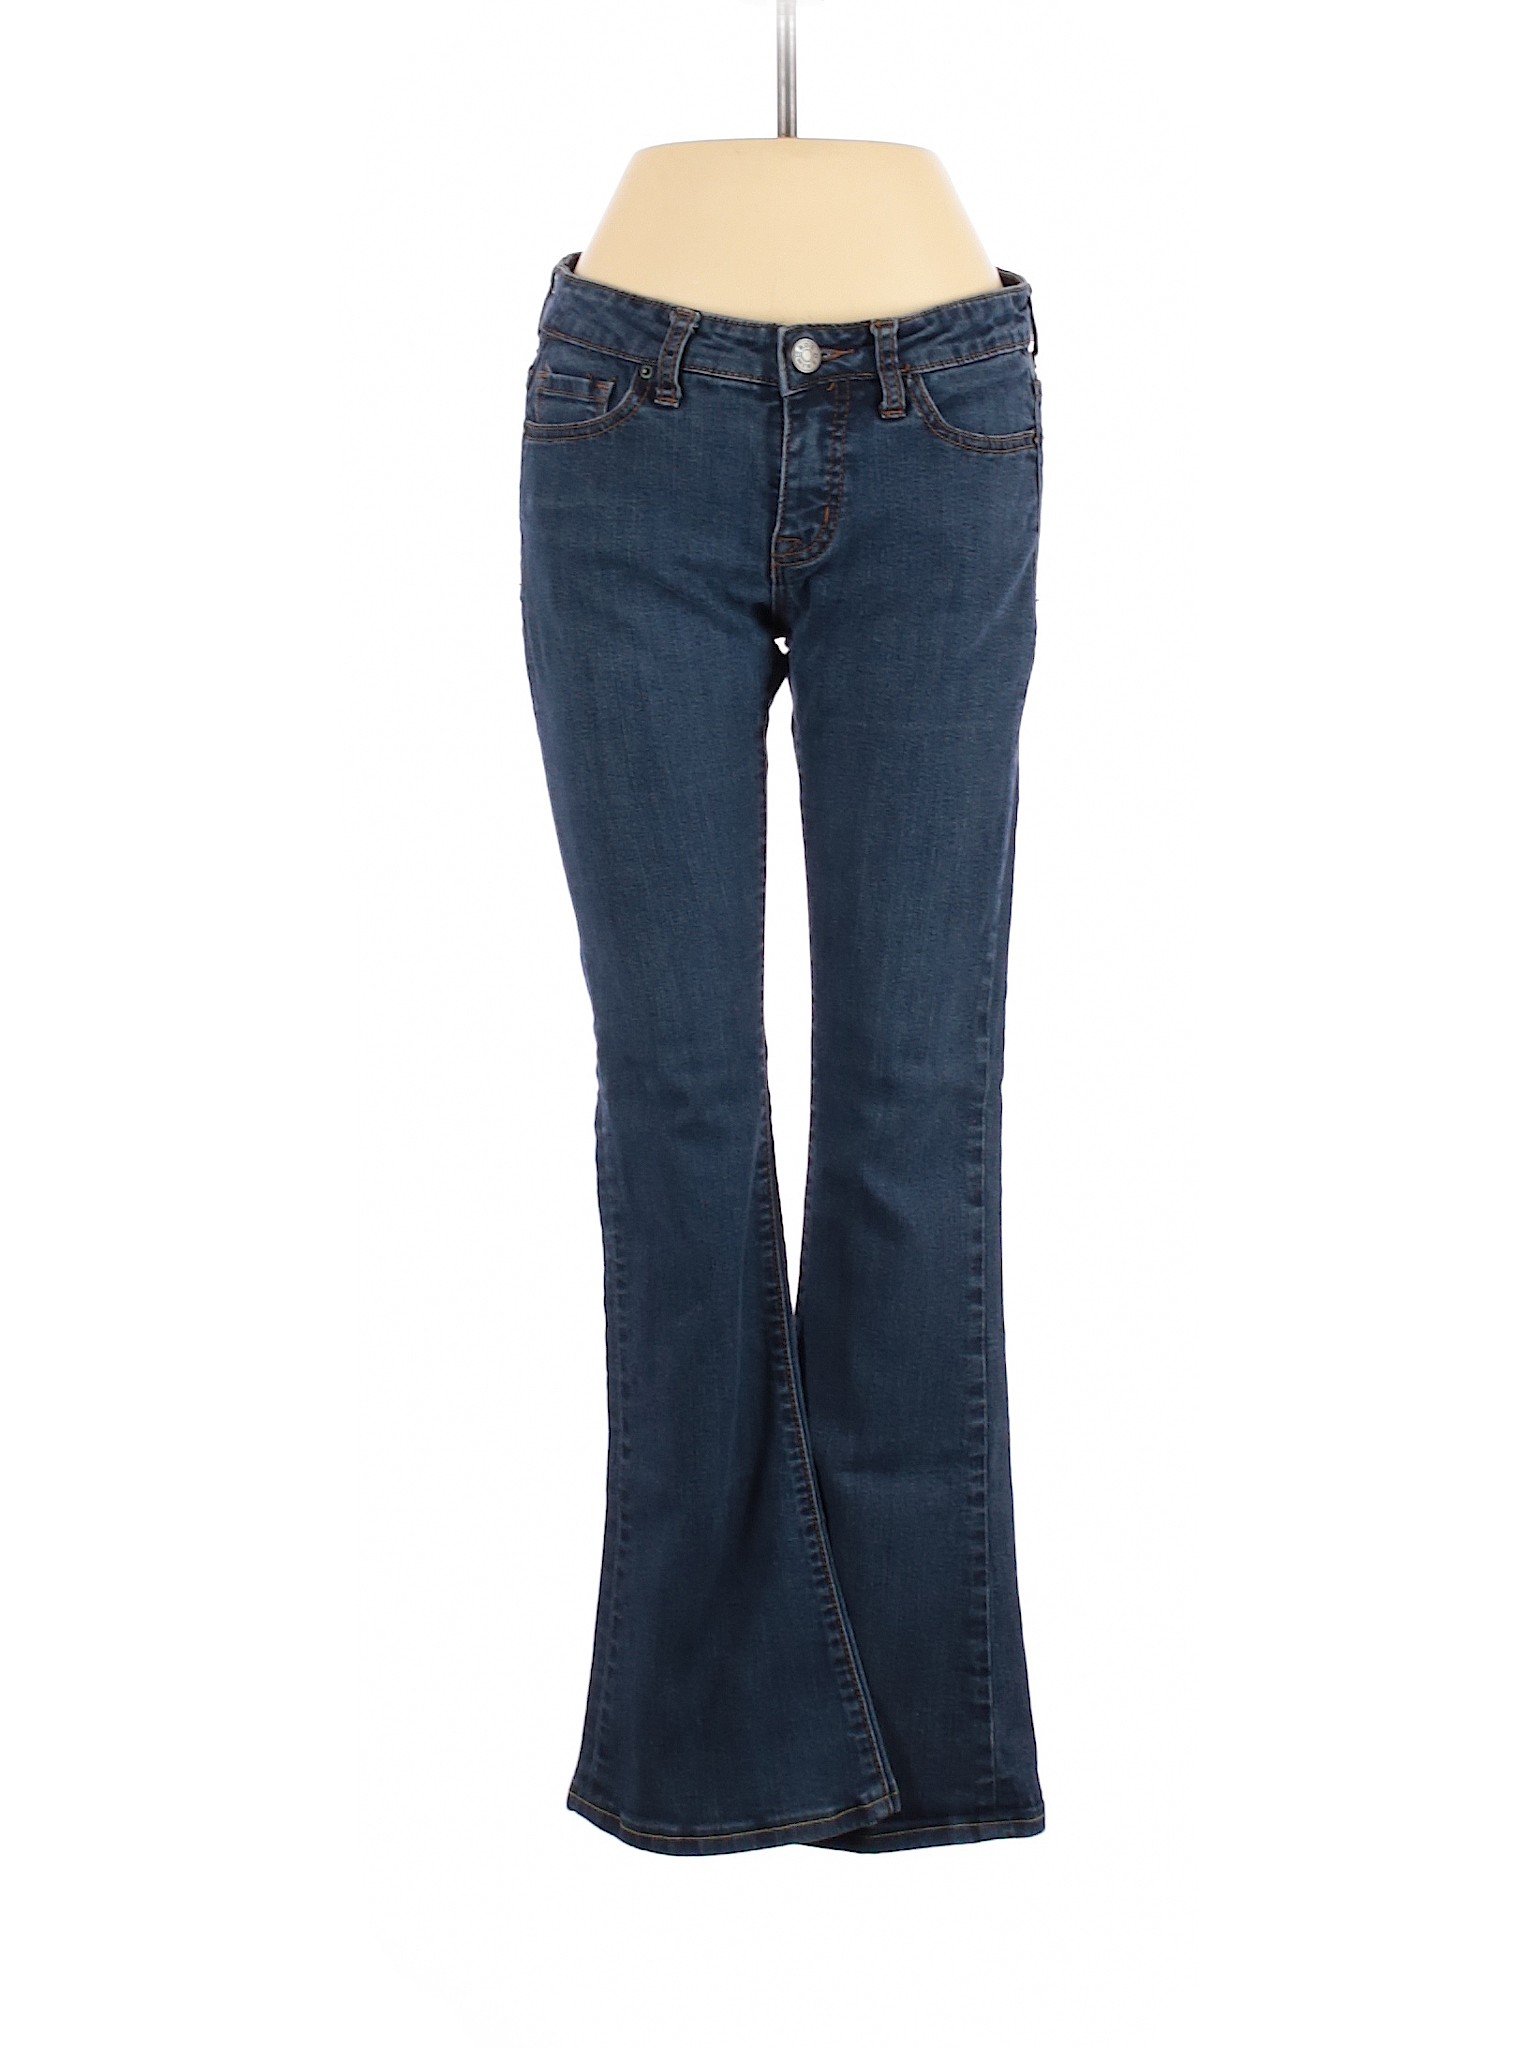 BDG Women Blue Jeans 27W | eBay